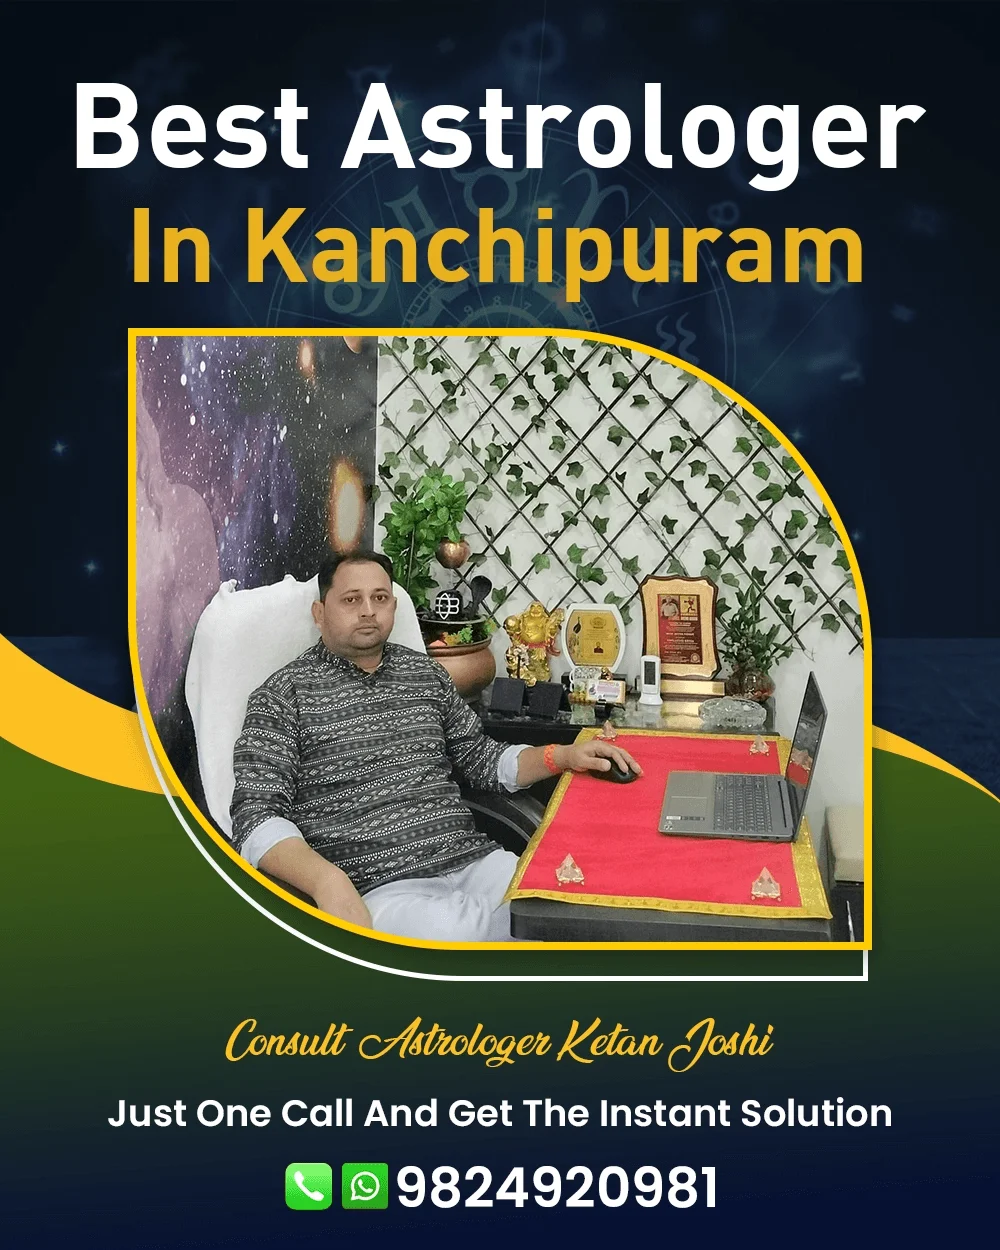 Best Astrologer In Kanchipuram